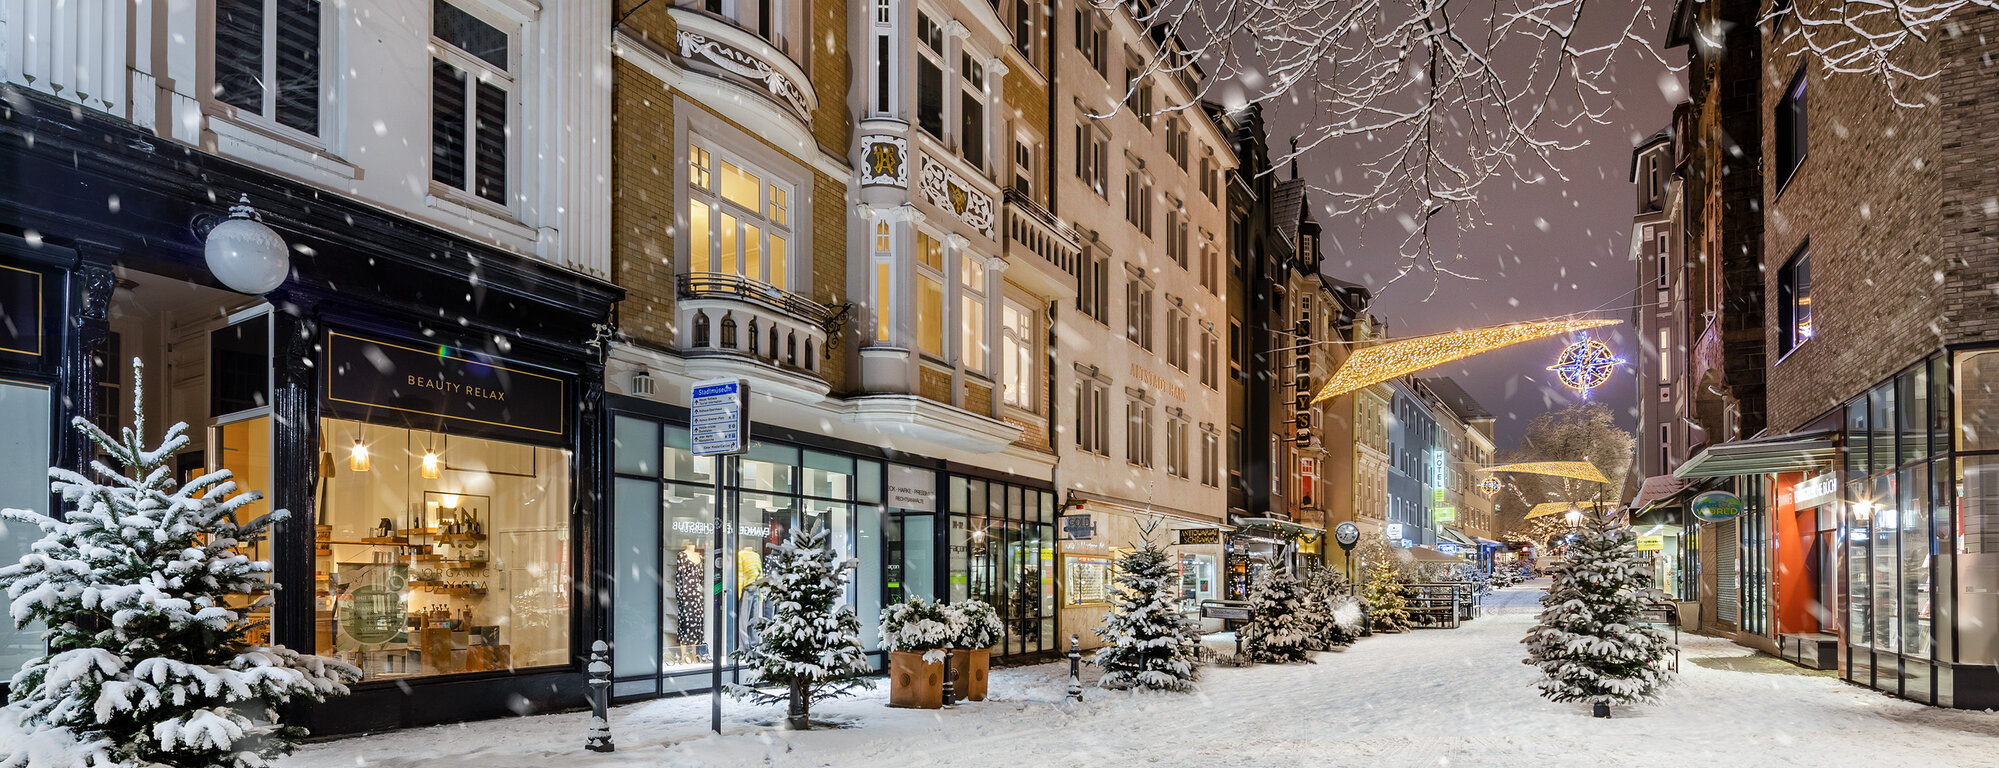 Dänische Strasse Winter Weihnachten